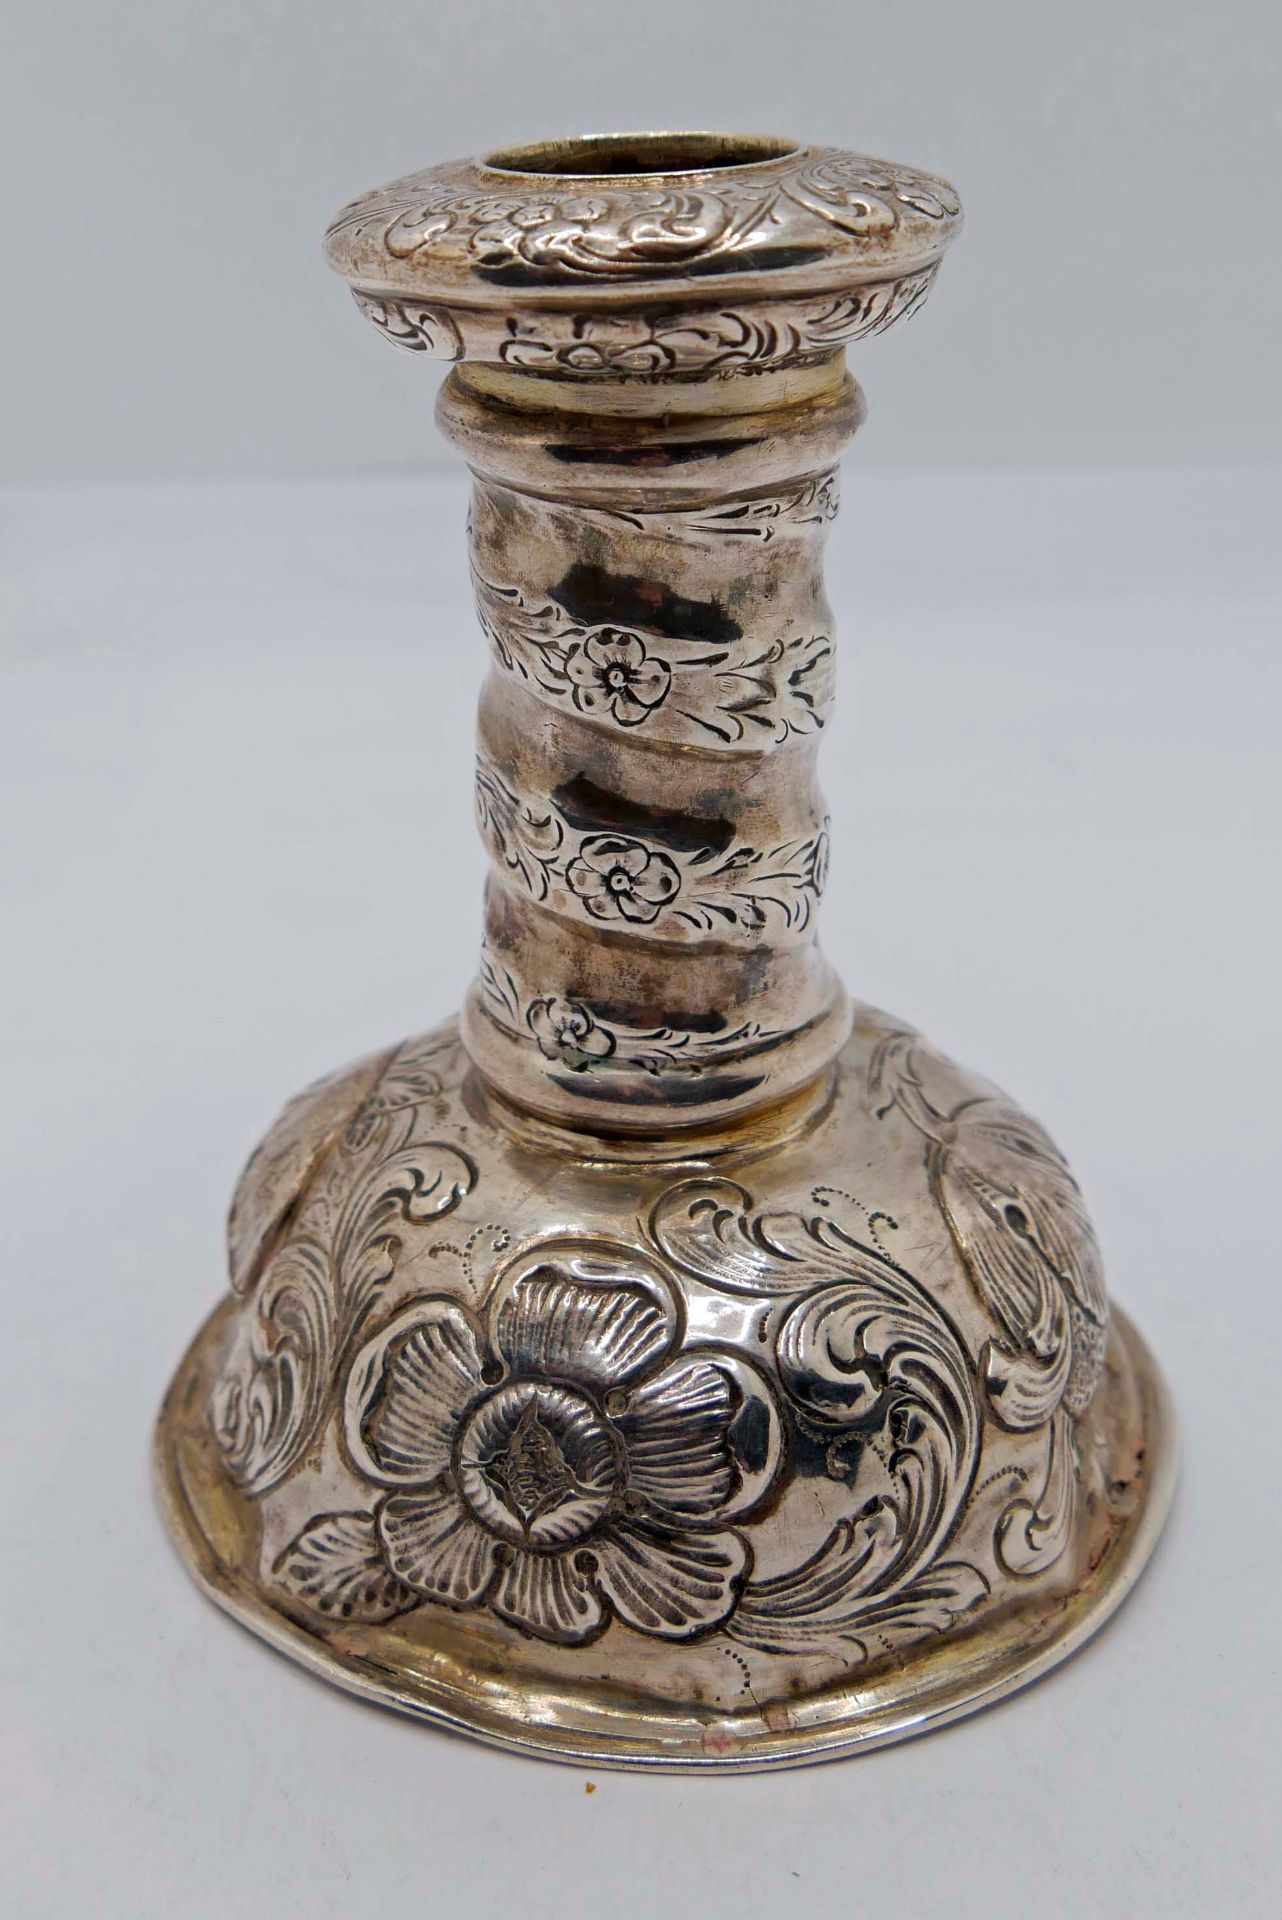 Silberleuchter Y.D. Schleißner Hanau wohl 17. Jahrhundert, mit Gebrauchsspuren. Höhe ca. 12 cm - Image 2 of 3